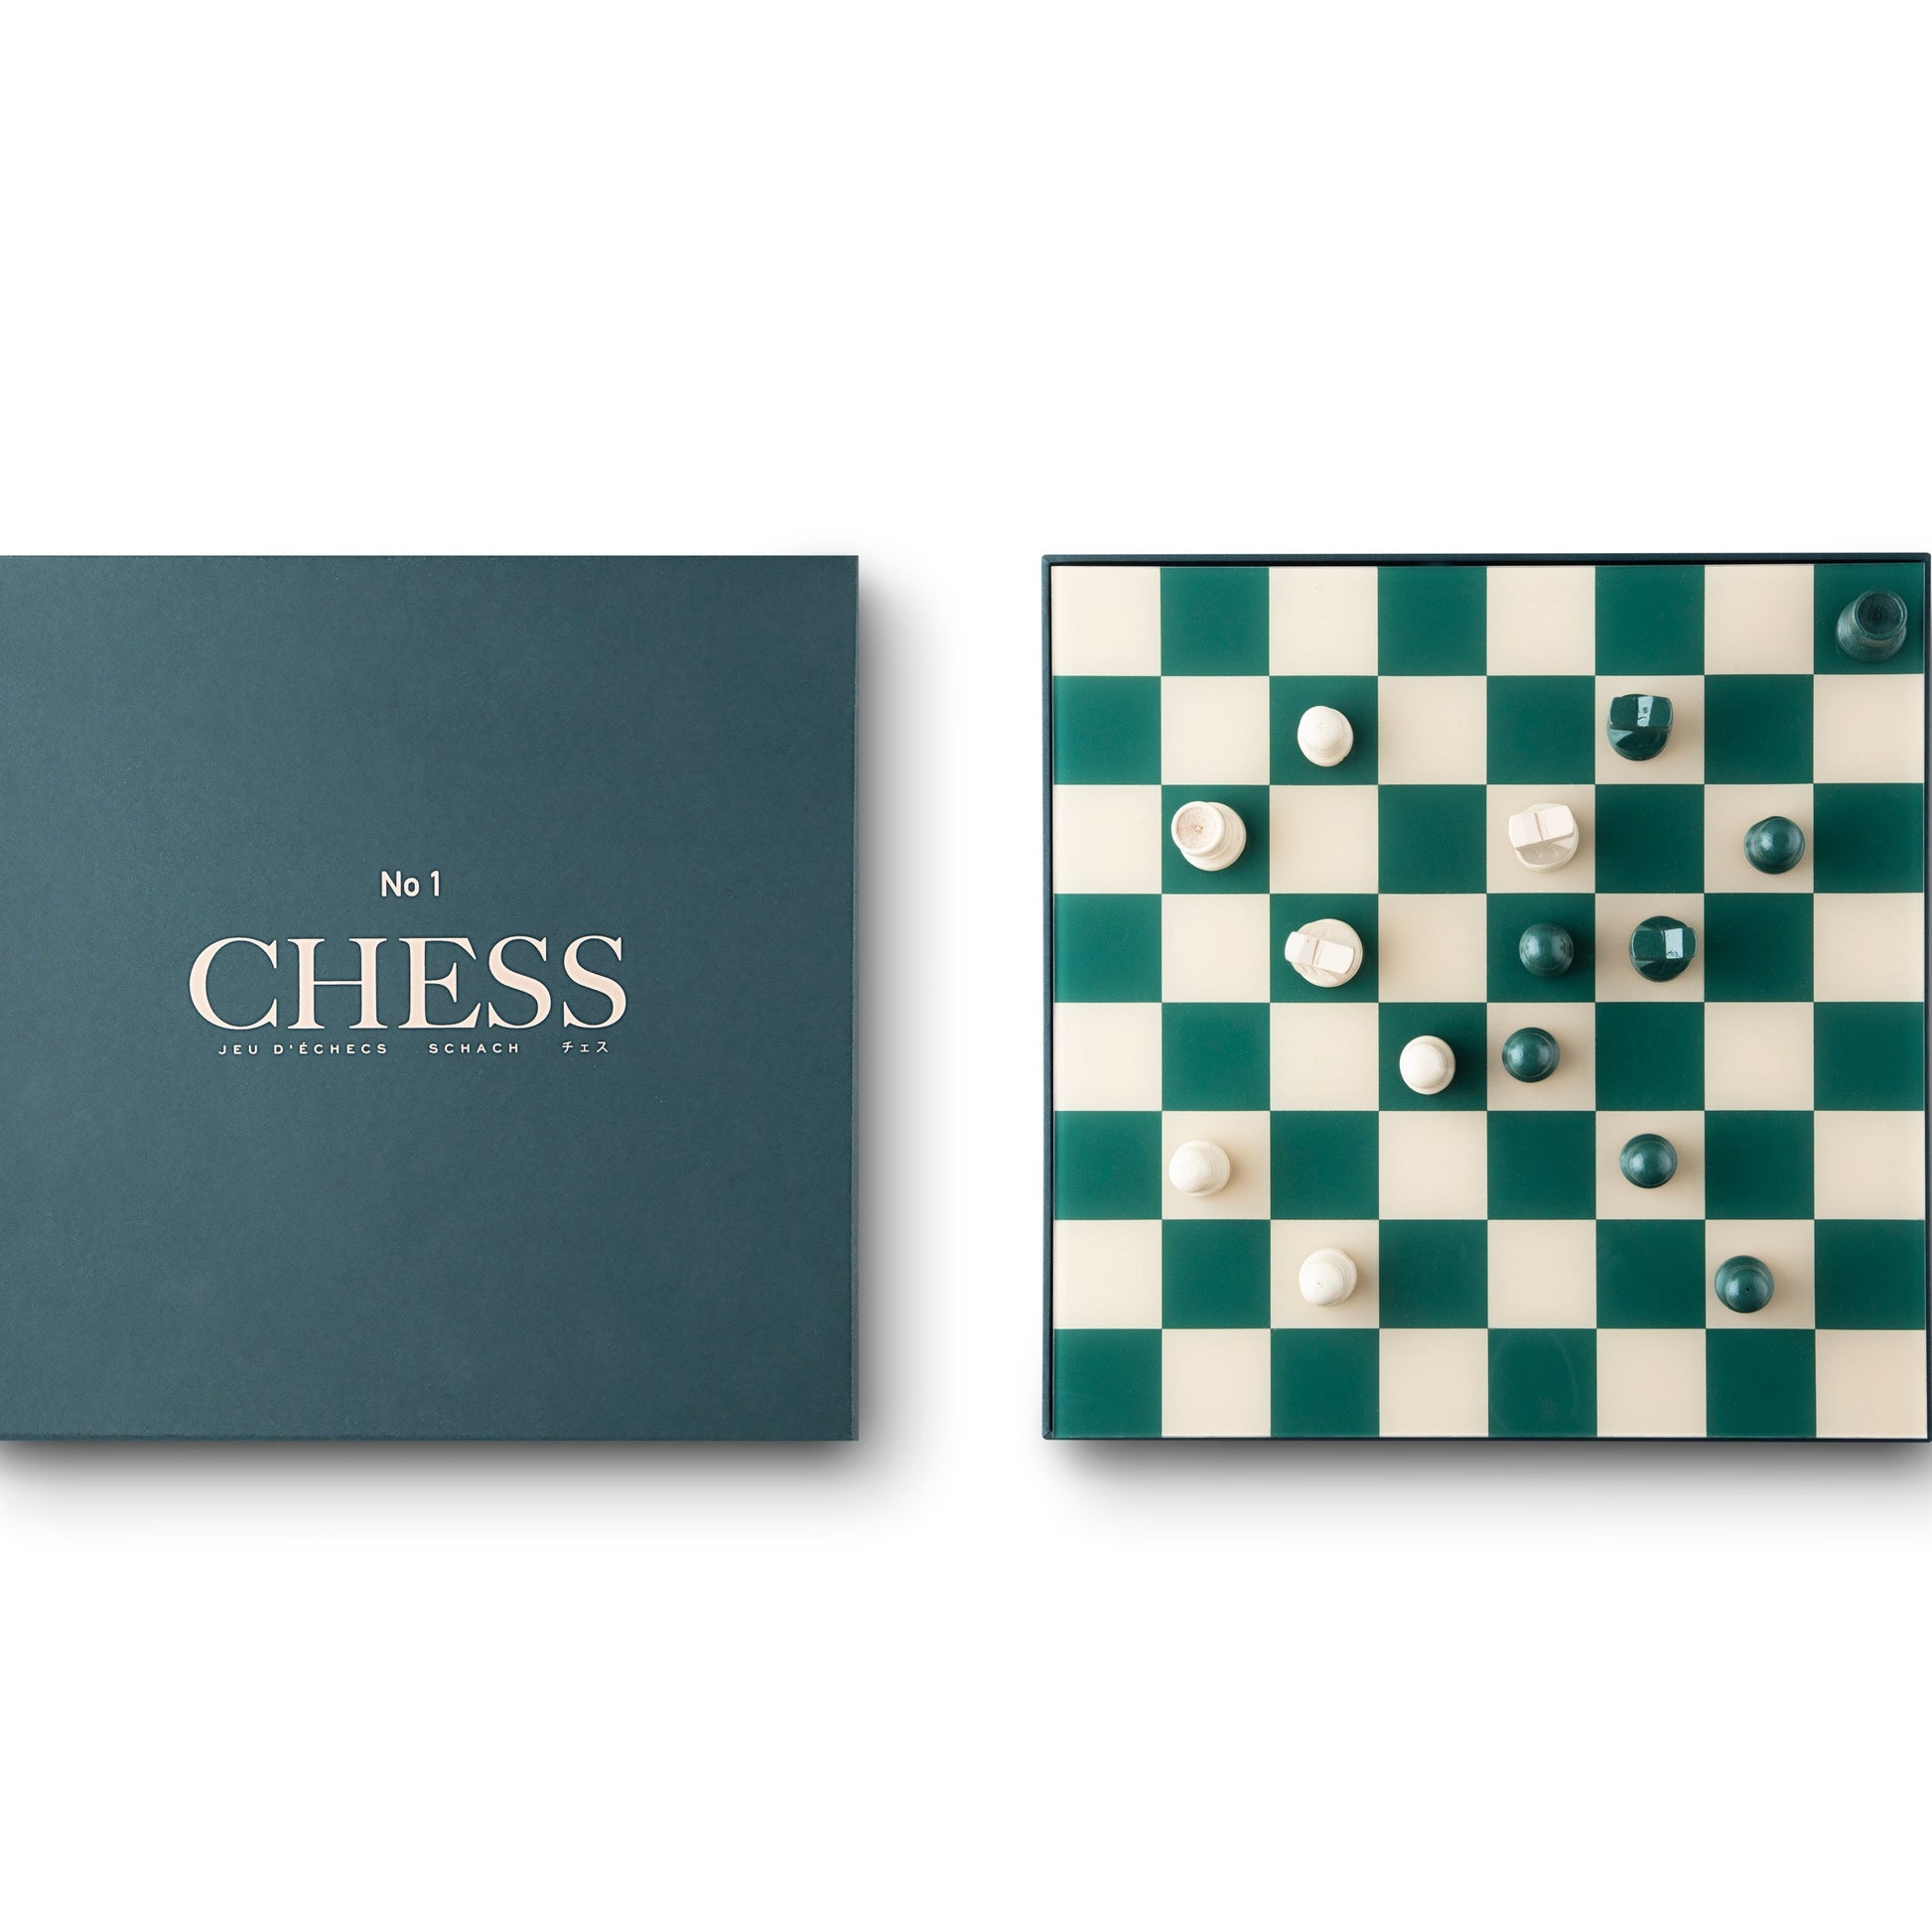 Printworks "No.1 Classic Chess" Schachspiel, schach, schachbrett, schach spielen, schach aufstellung, schachspiel, schach regeln, schach lernen, printworks schach, printworks chess, the art of chess,